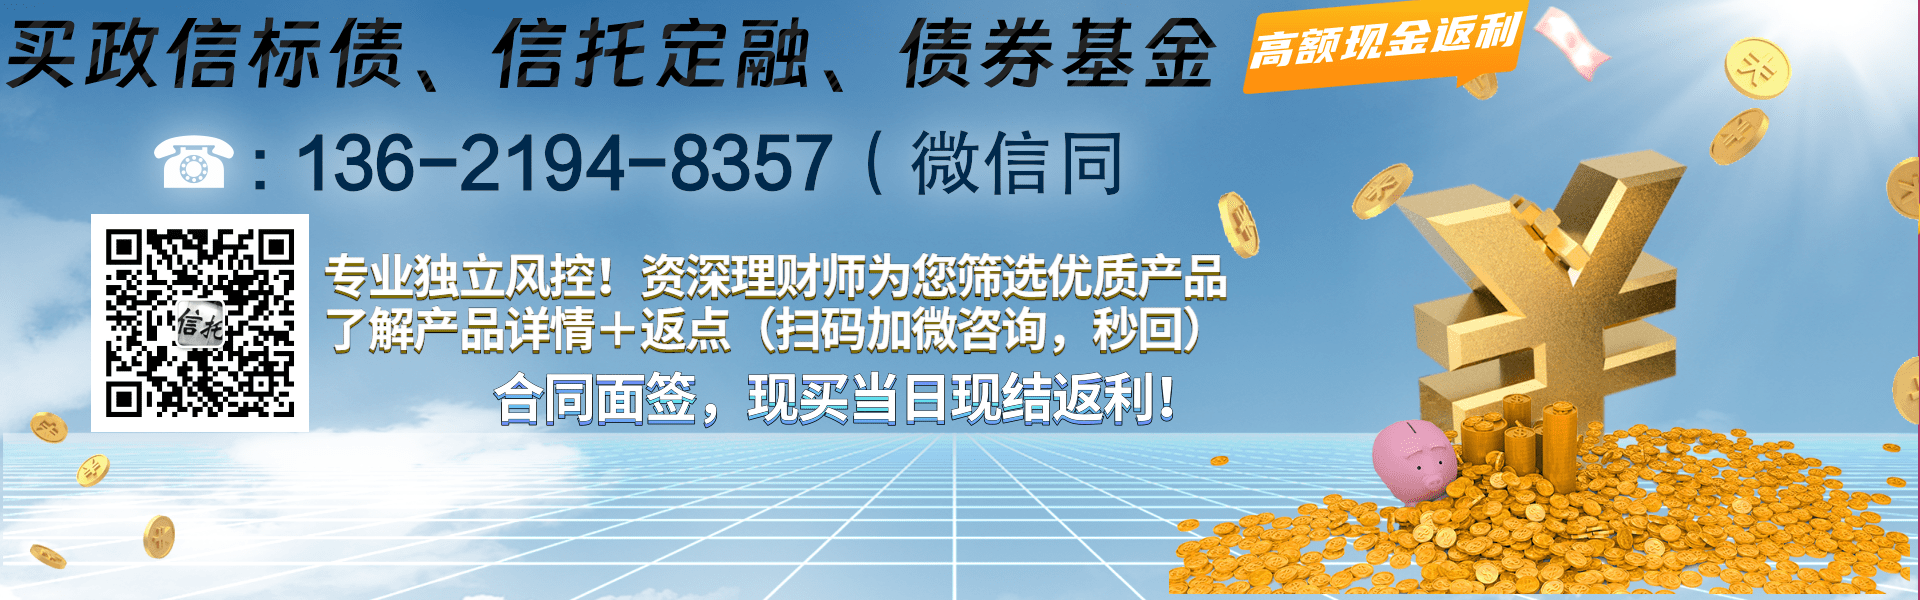 广西凤山县鑫凤投资发展债权收益权项目|政府债定融